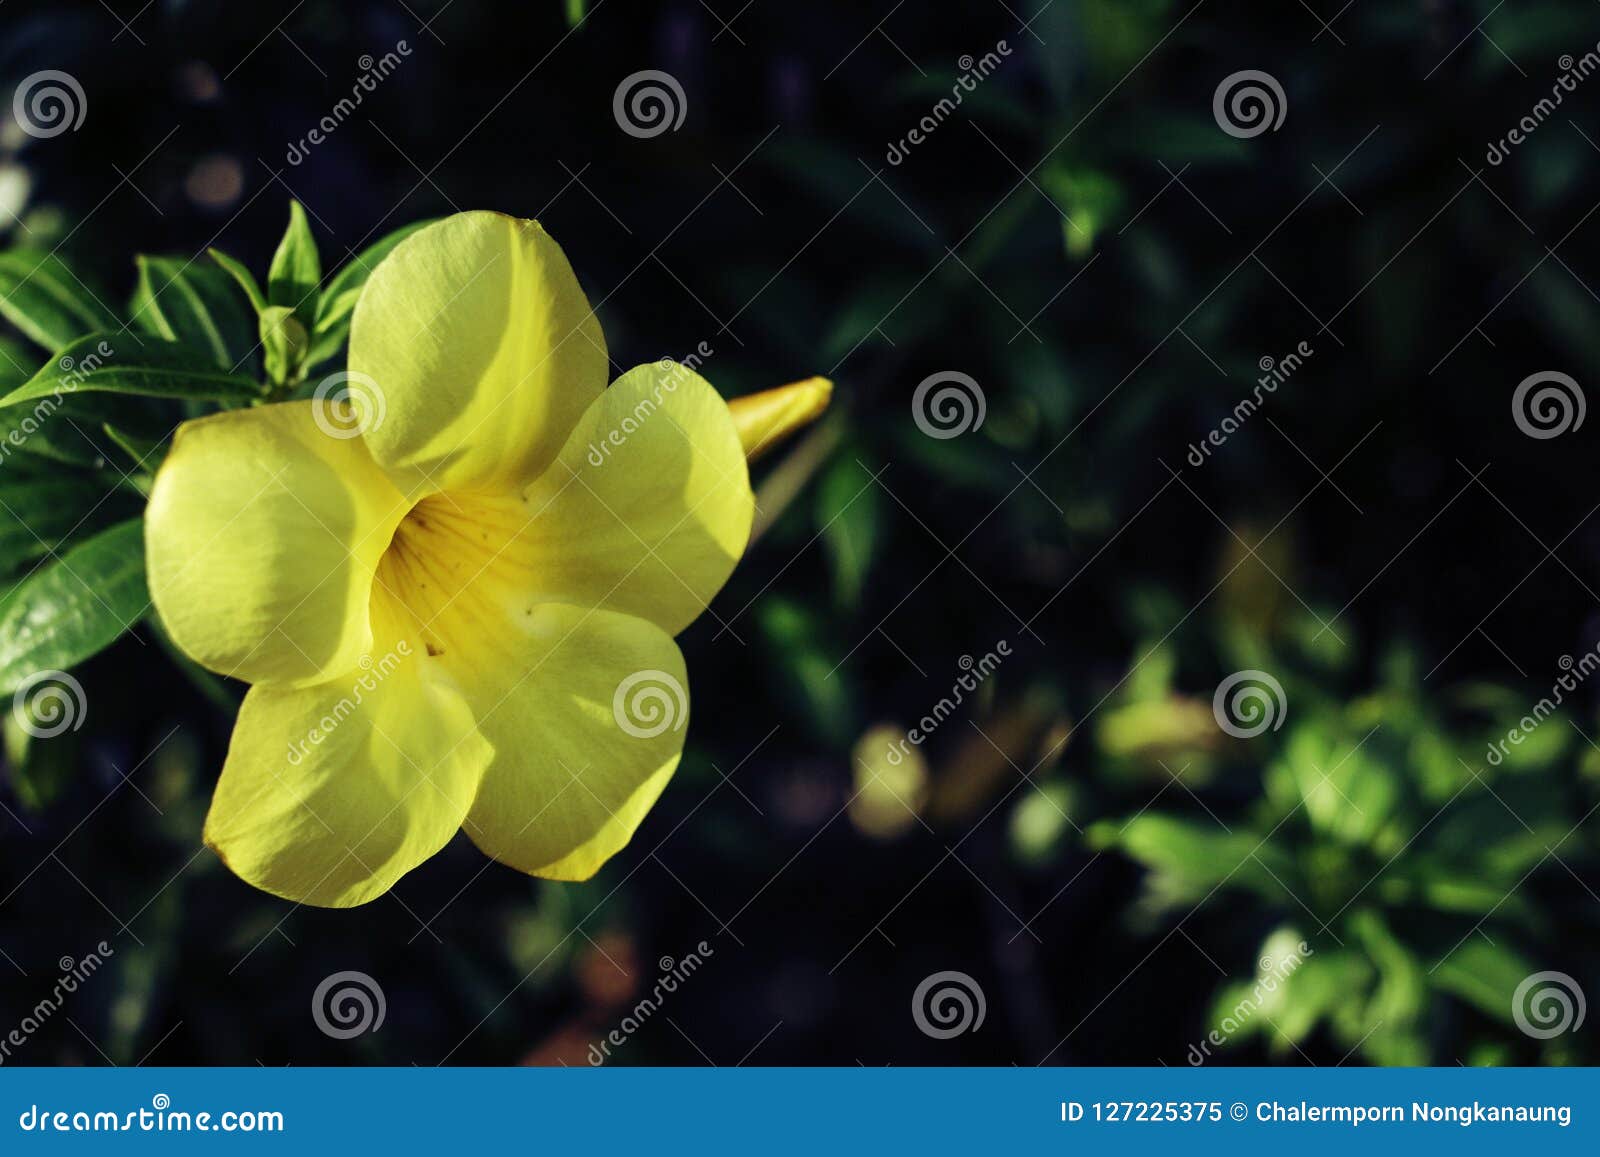 Hoa sứ vàng trên nền ch shadow xanh là một bức ảnh rực rỡ và đẹp mắt. Hãy xem ảnh và cảm nhận được sự tươi mới, sự tươi trẻ của hoa sứ vàng này, cũng như sự hài hòa với nền xanh tươi của bức ảnh.